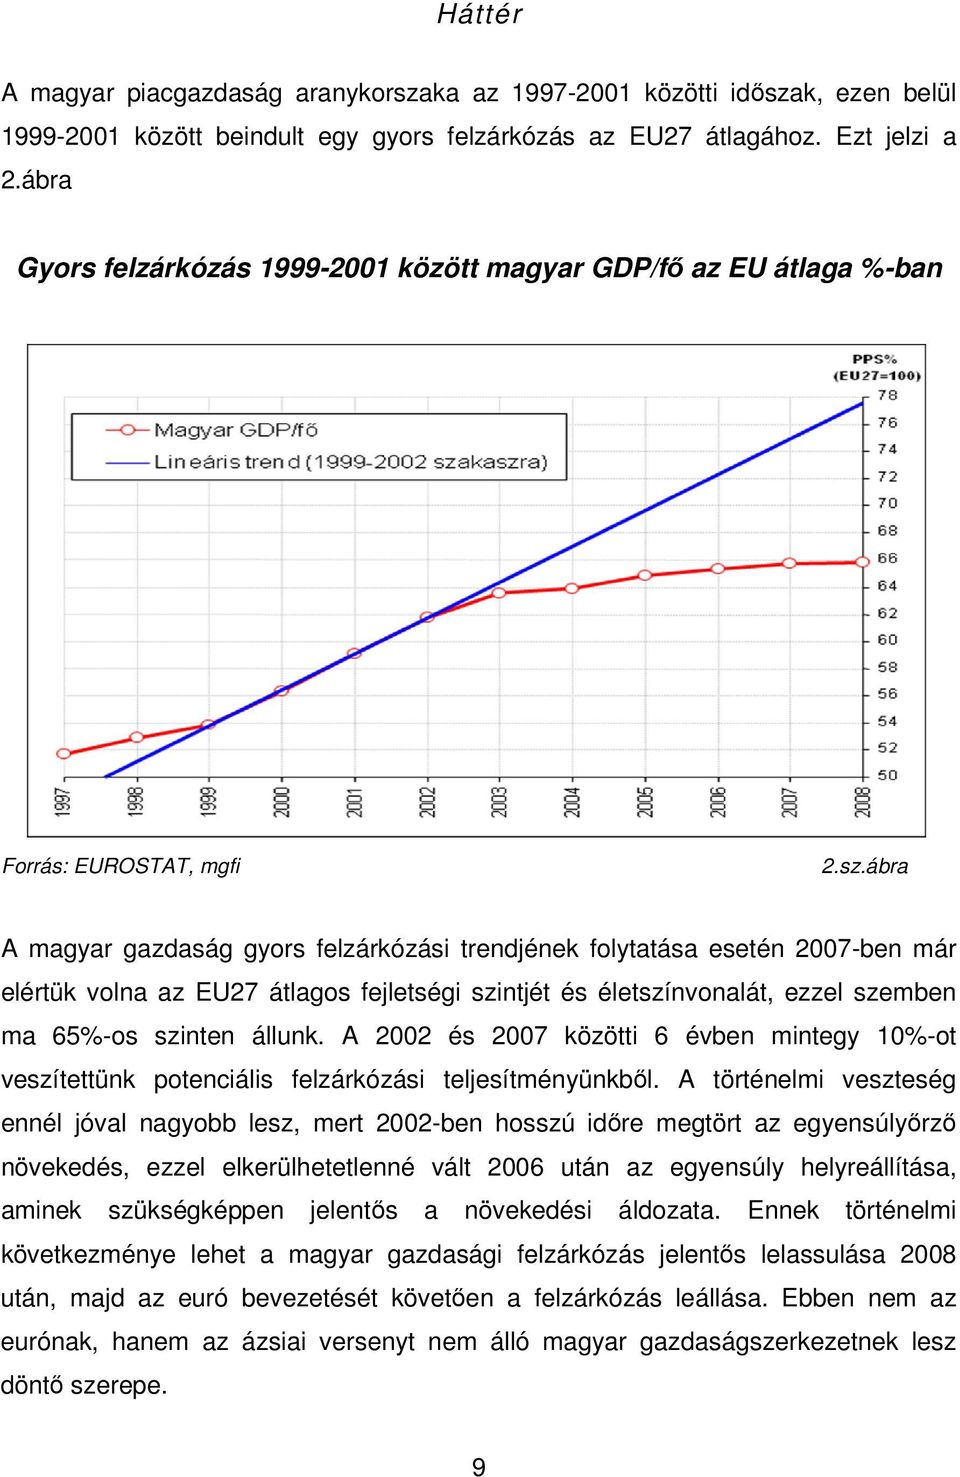 ábra A magyar gazdaság gyors felzárkózási trendjének folytatása esetén 2007-ben már elértük volna az EU27 átlagos fejletségi szintjét és életszínvonalát, ezzel szemben ma 65%-os szinten állunk.